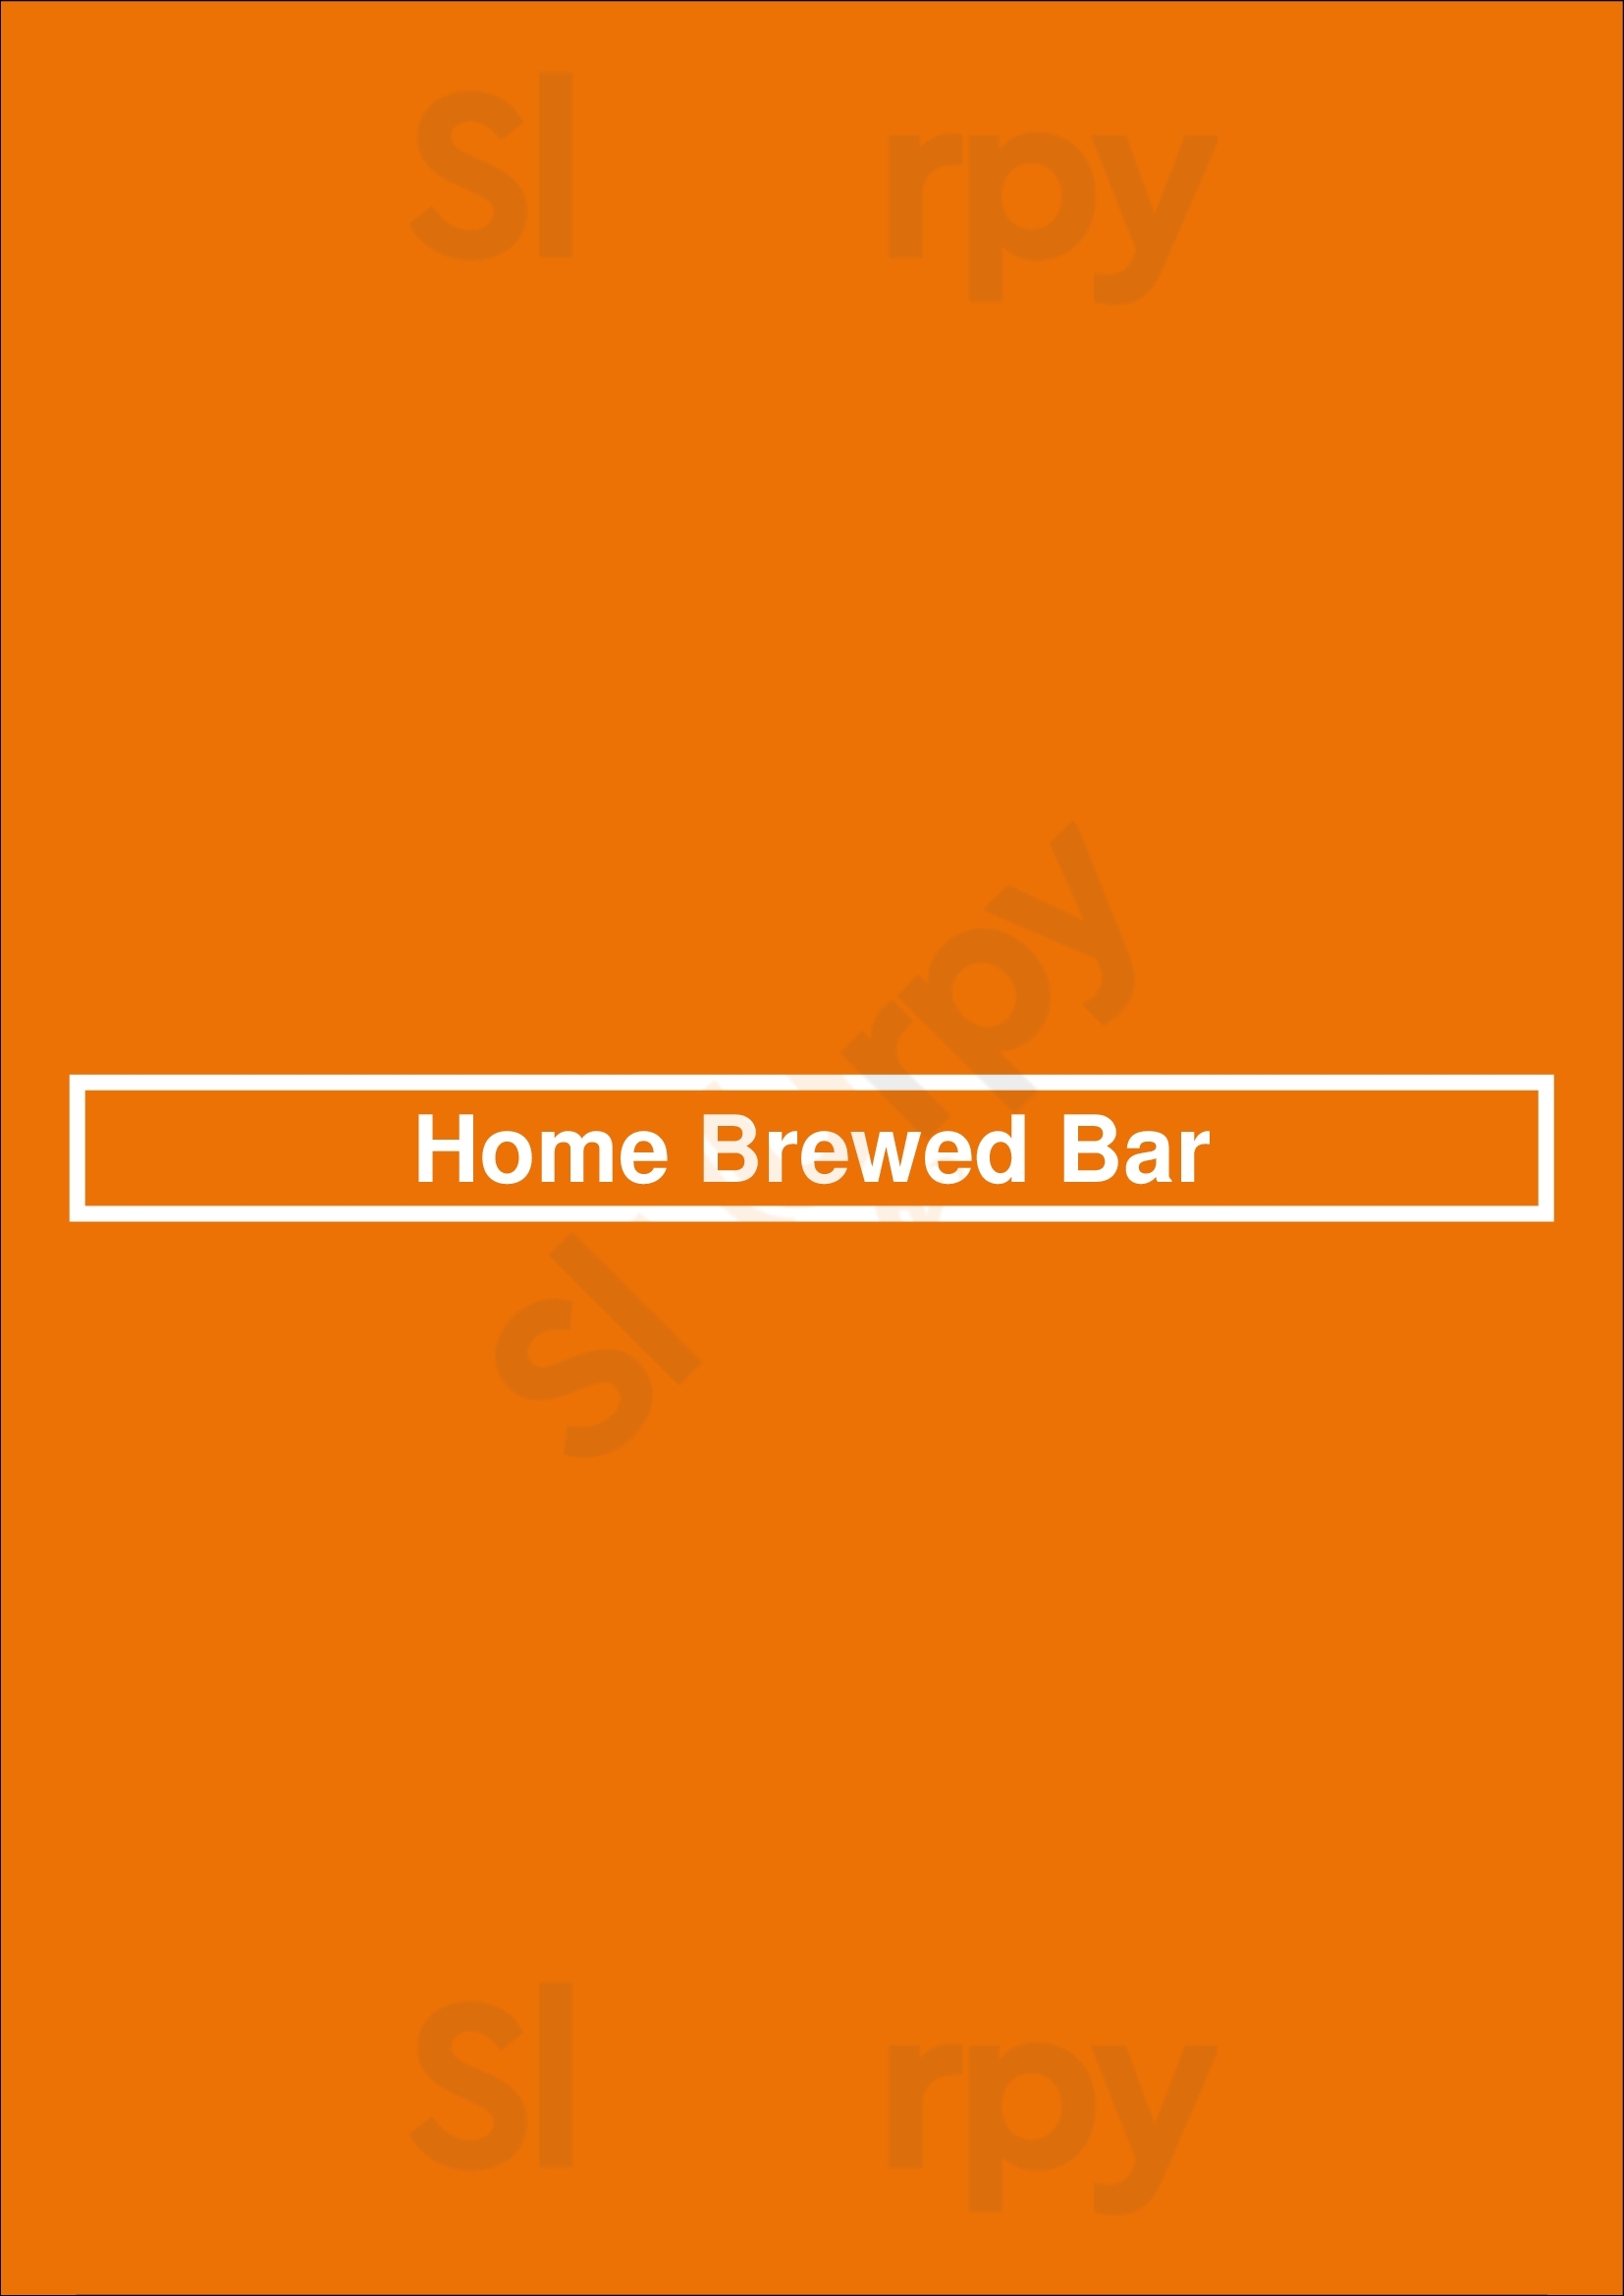 Home Brewed Bar Pasadena Menu - 1